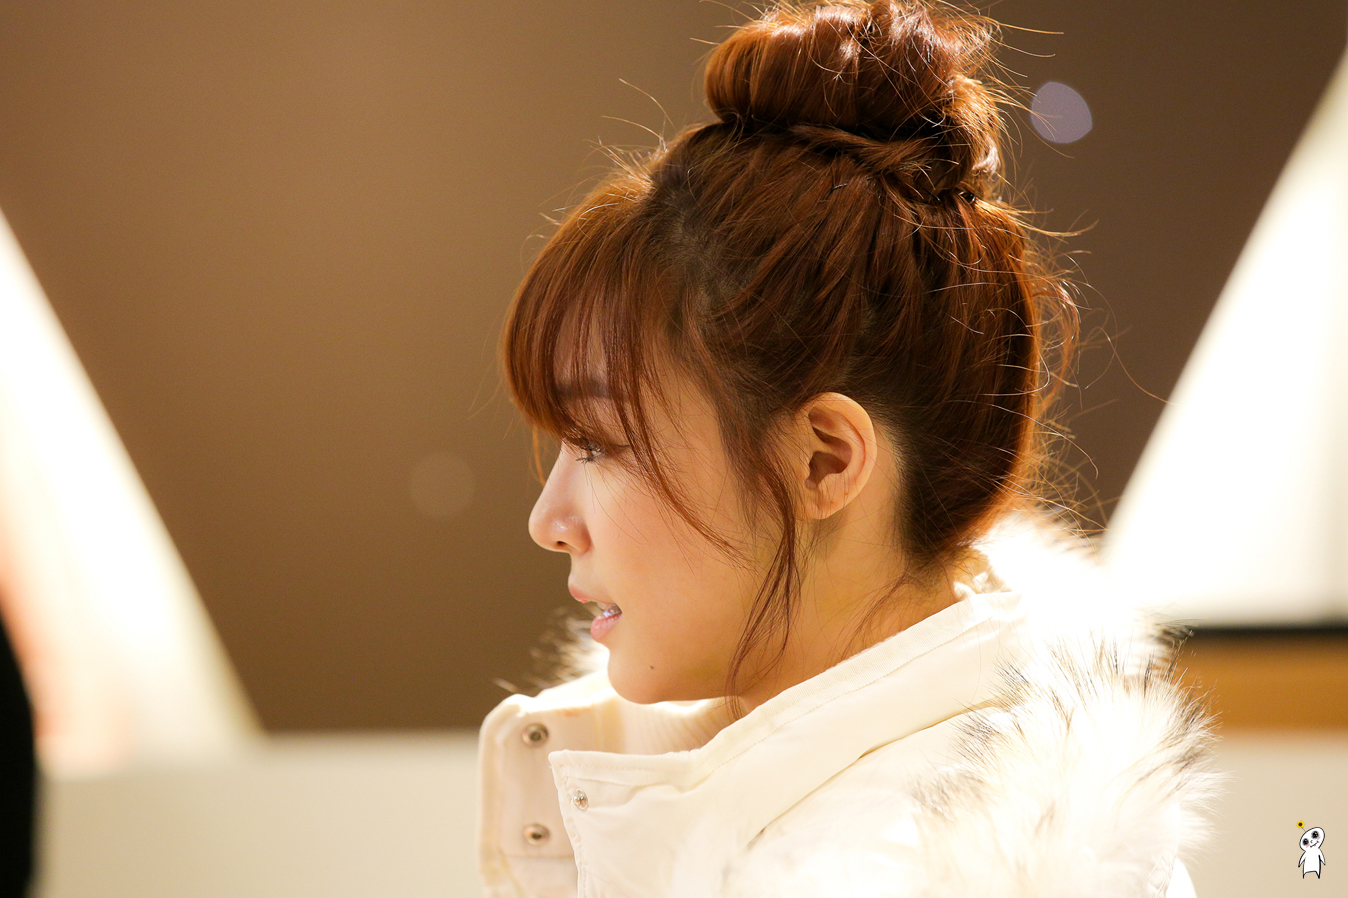 [PIC][28-11-2013]Tiffany ghé thăm cửa hàng "QUA" ở Hyundai Department Store vào trưa nay - Page 2 2653FB3D52980C850D4145